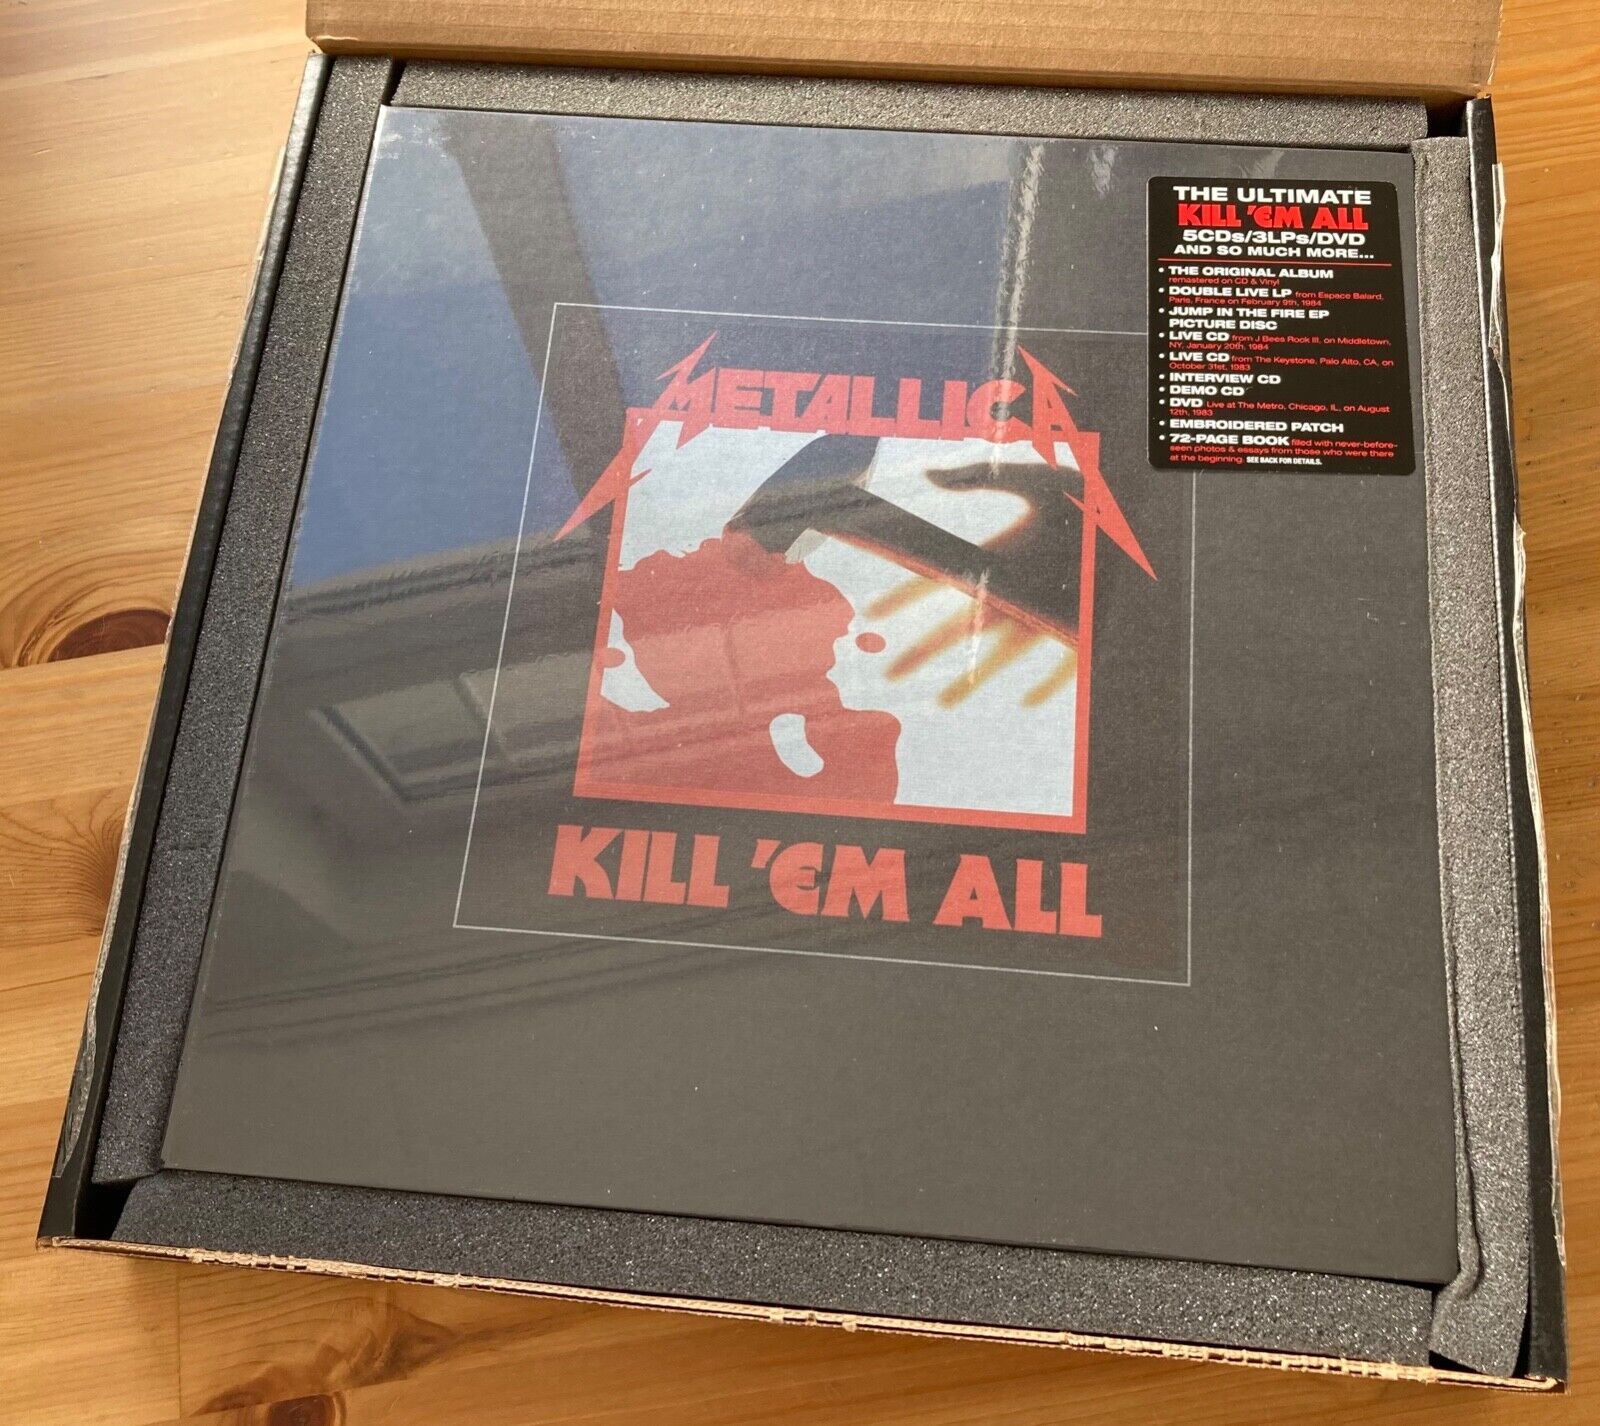 METALLICA「KILL 'EM ALL」CD - 洋楽